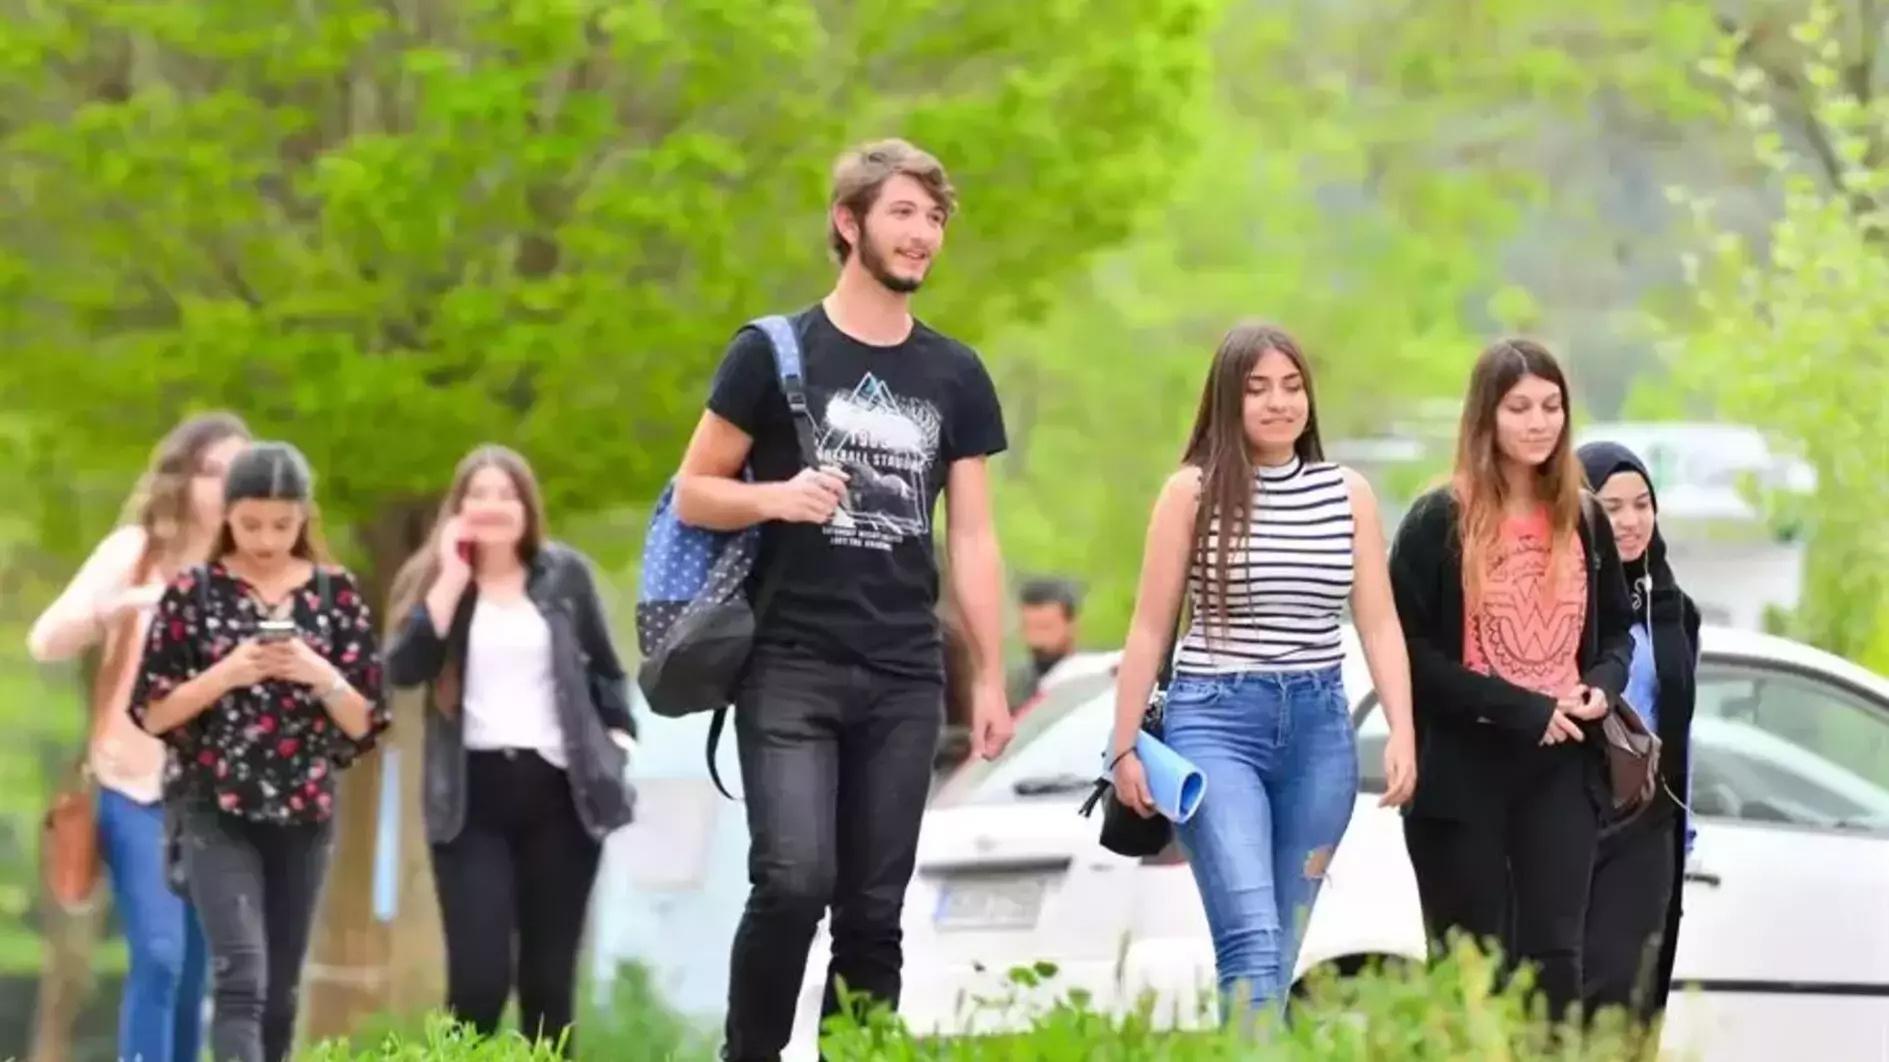 Türkiye-Azerbeidzjan Universiteit om het hoger onderwijs tussen landen te overbruggen